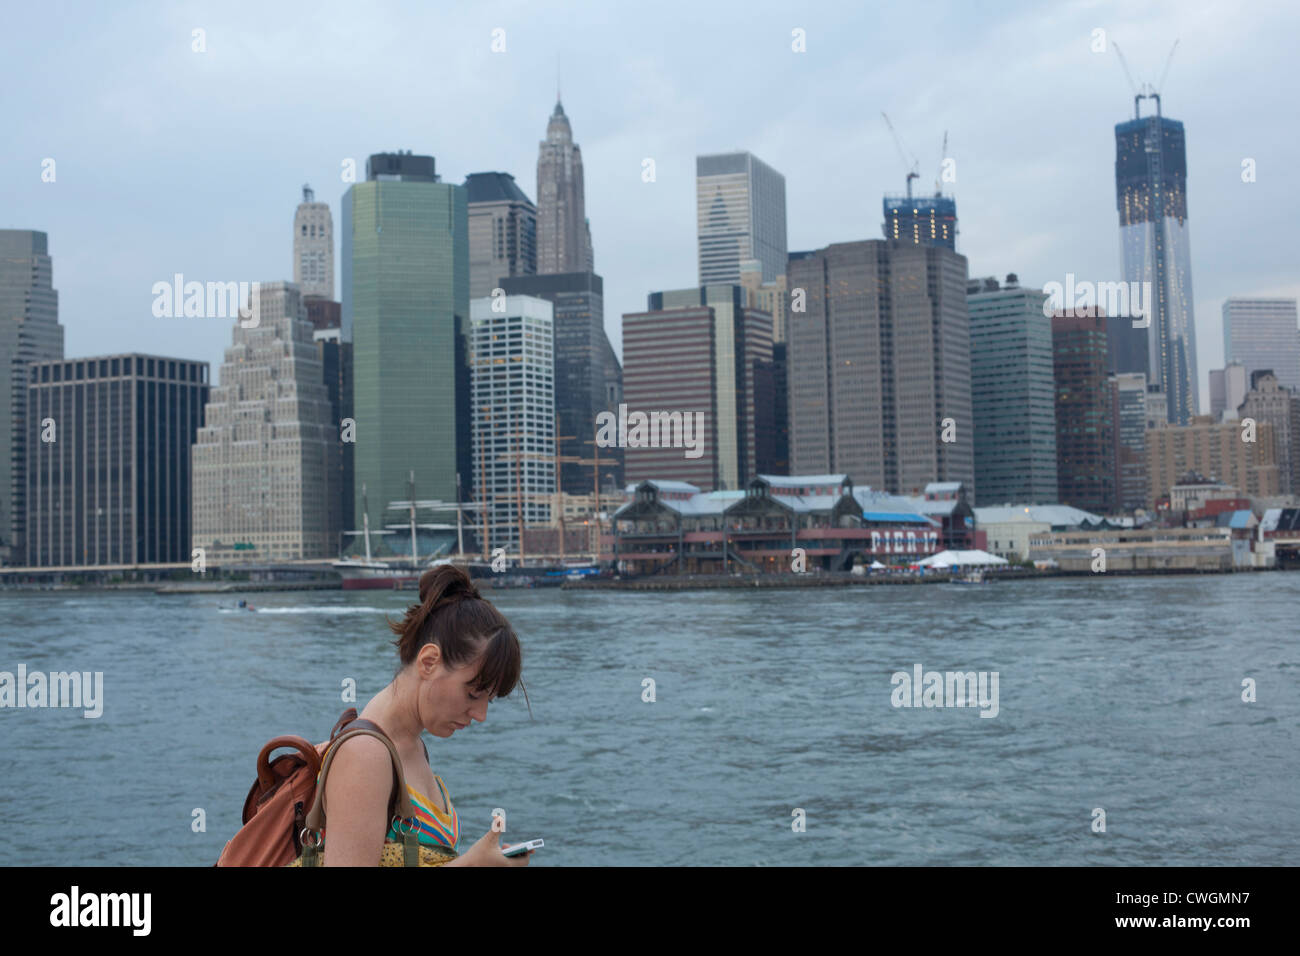 Le port de New York avec l'île de Manhattan liberté girl Banque D'Images